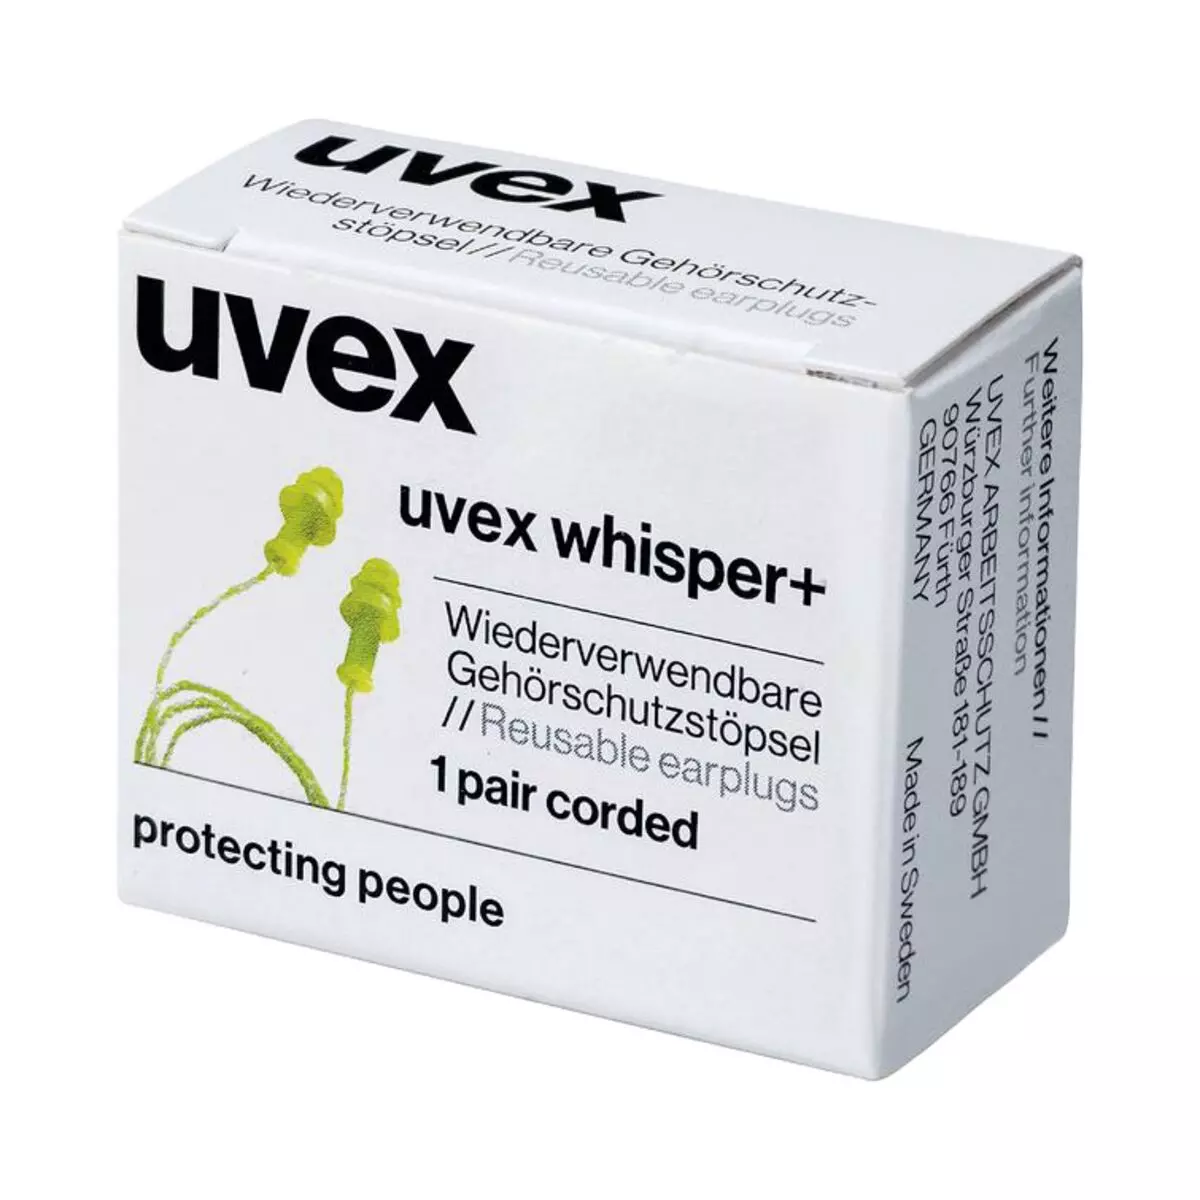 uvex whisper+ Gehörschutzstöpsel mit Kordel, 50 Paar